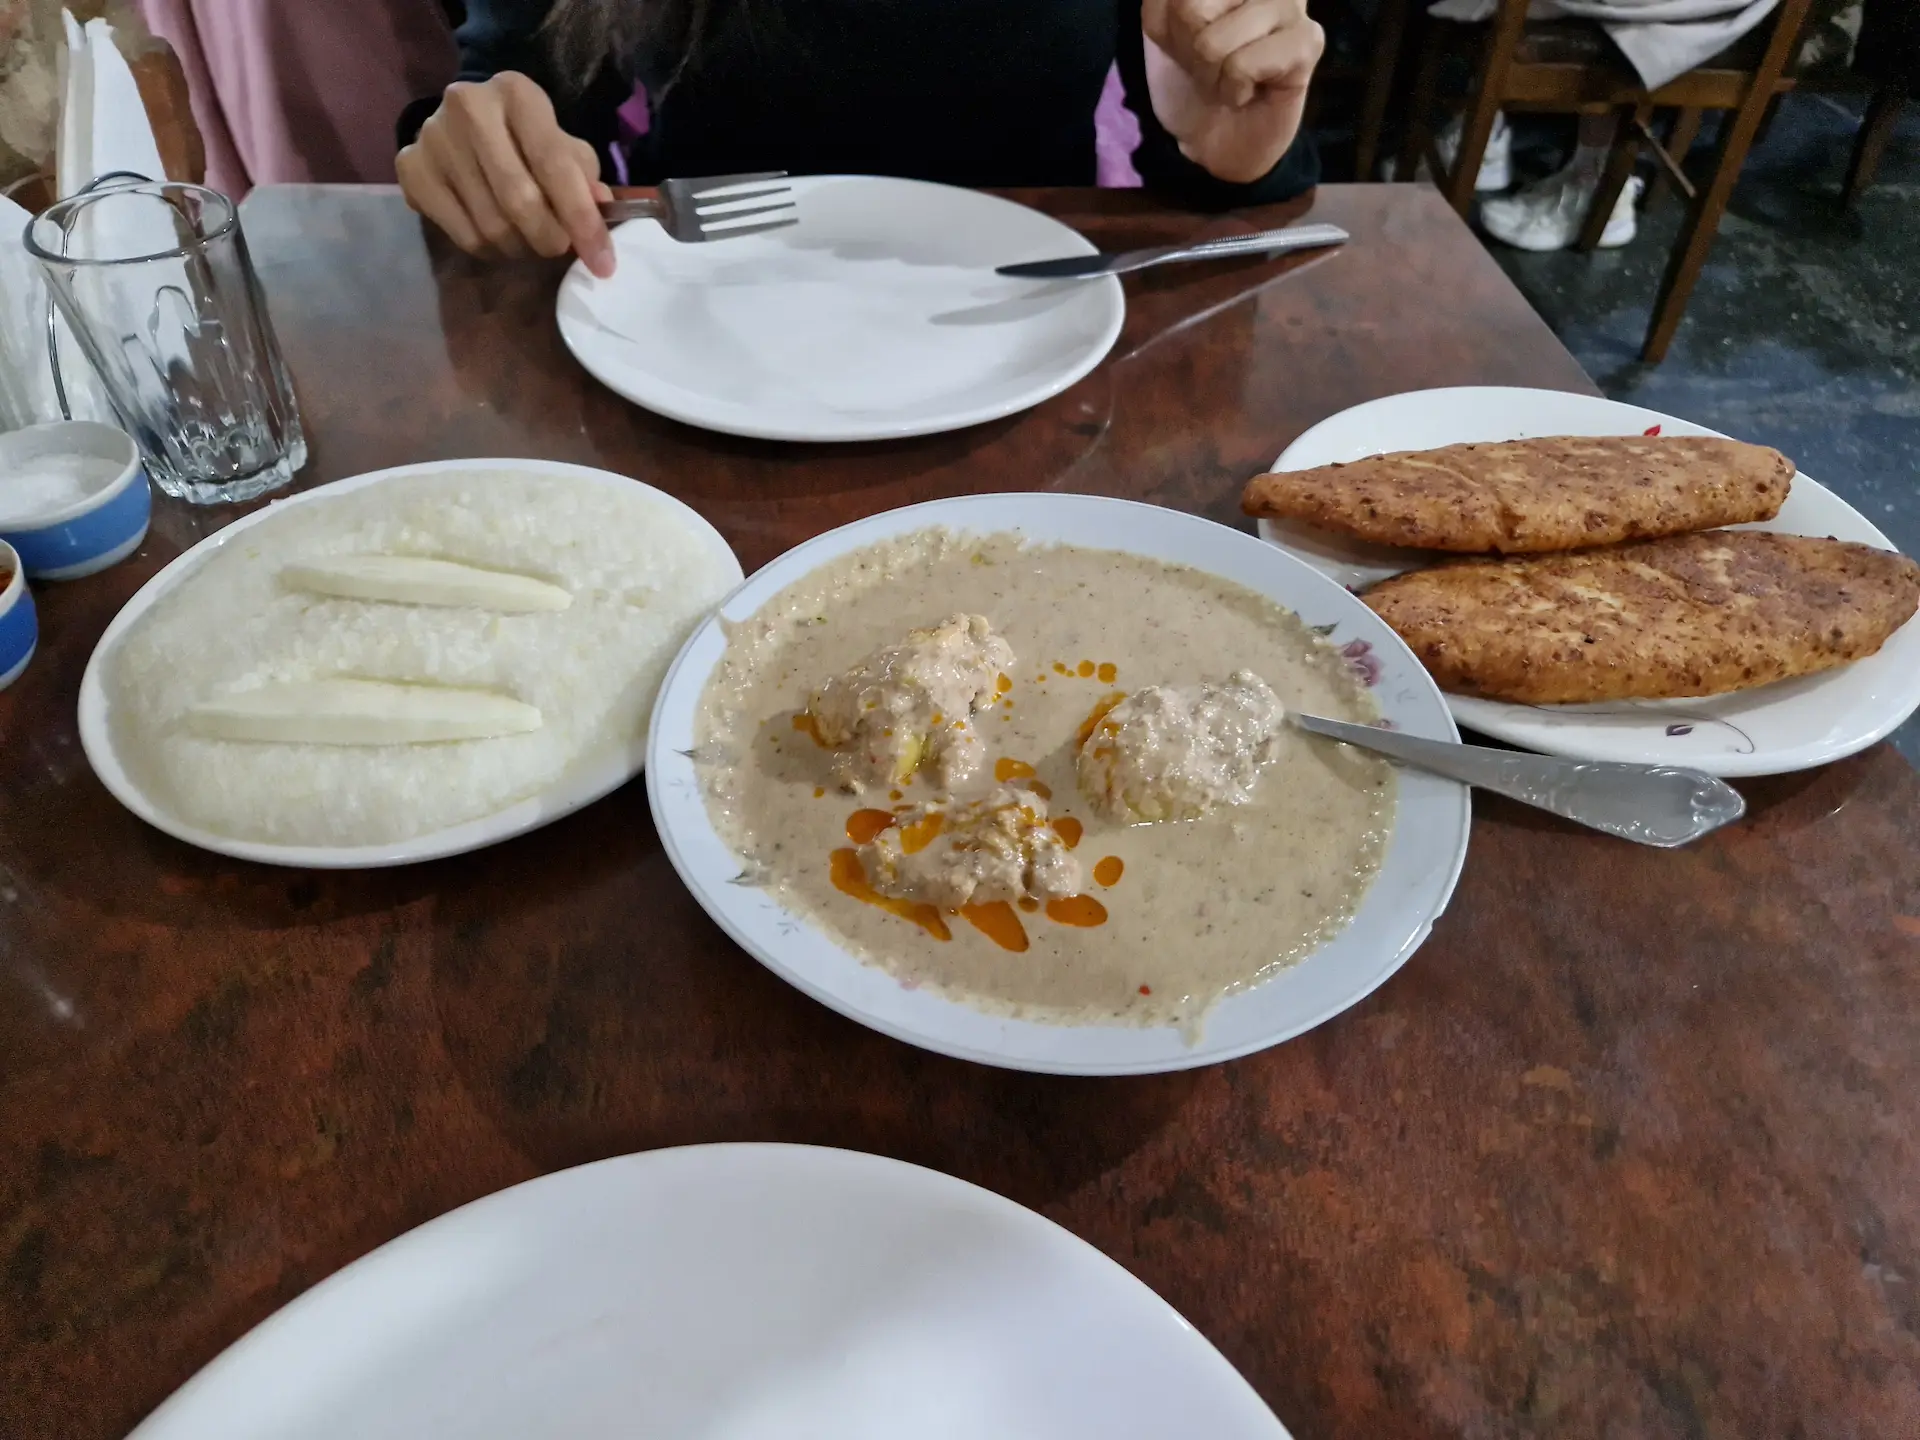 Notre table à Mapshalia. On voit un bol de kharcho, un ghomi sur la gauche, et deux chvishtari sur la droite. Les plats sont au centre, partagés, on se sert dans son assiette.